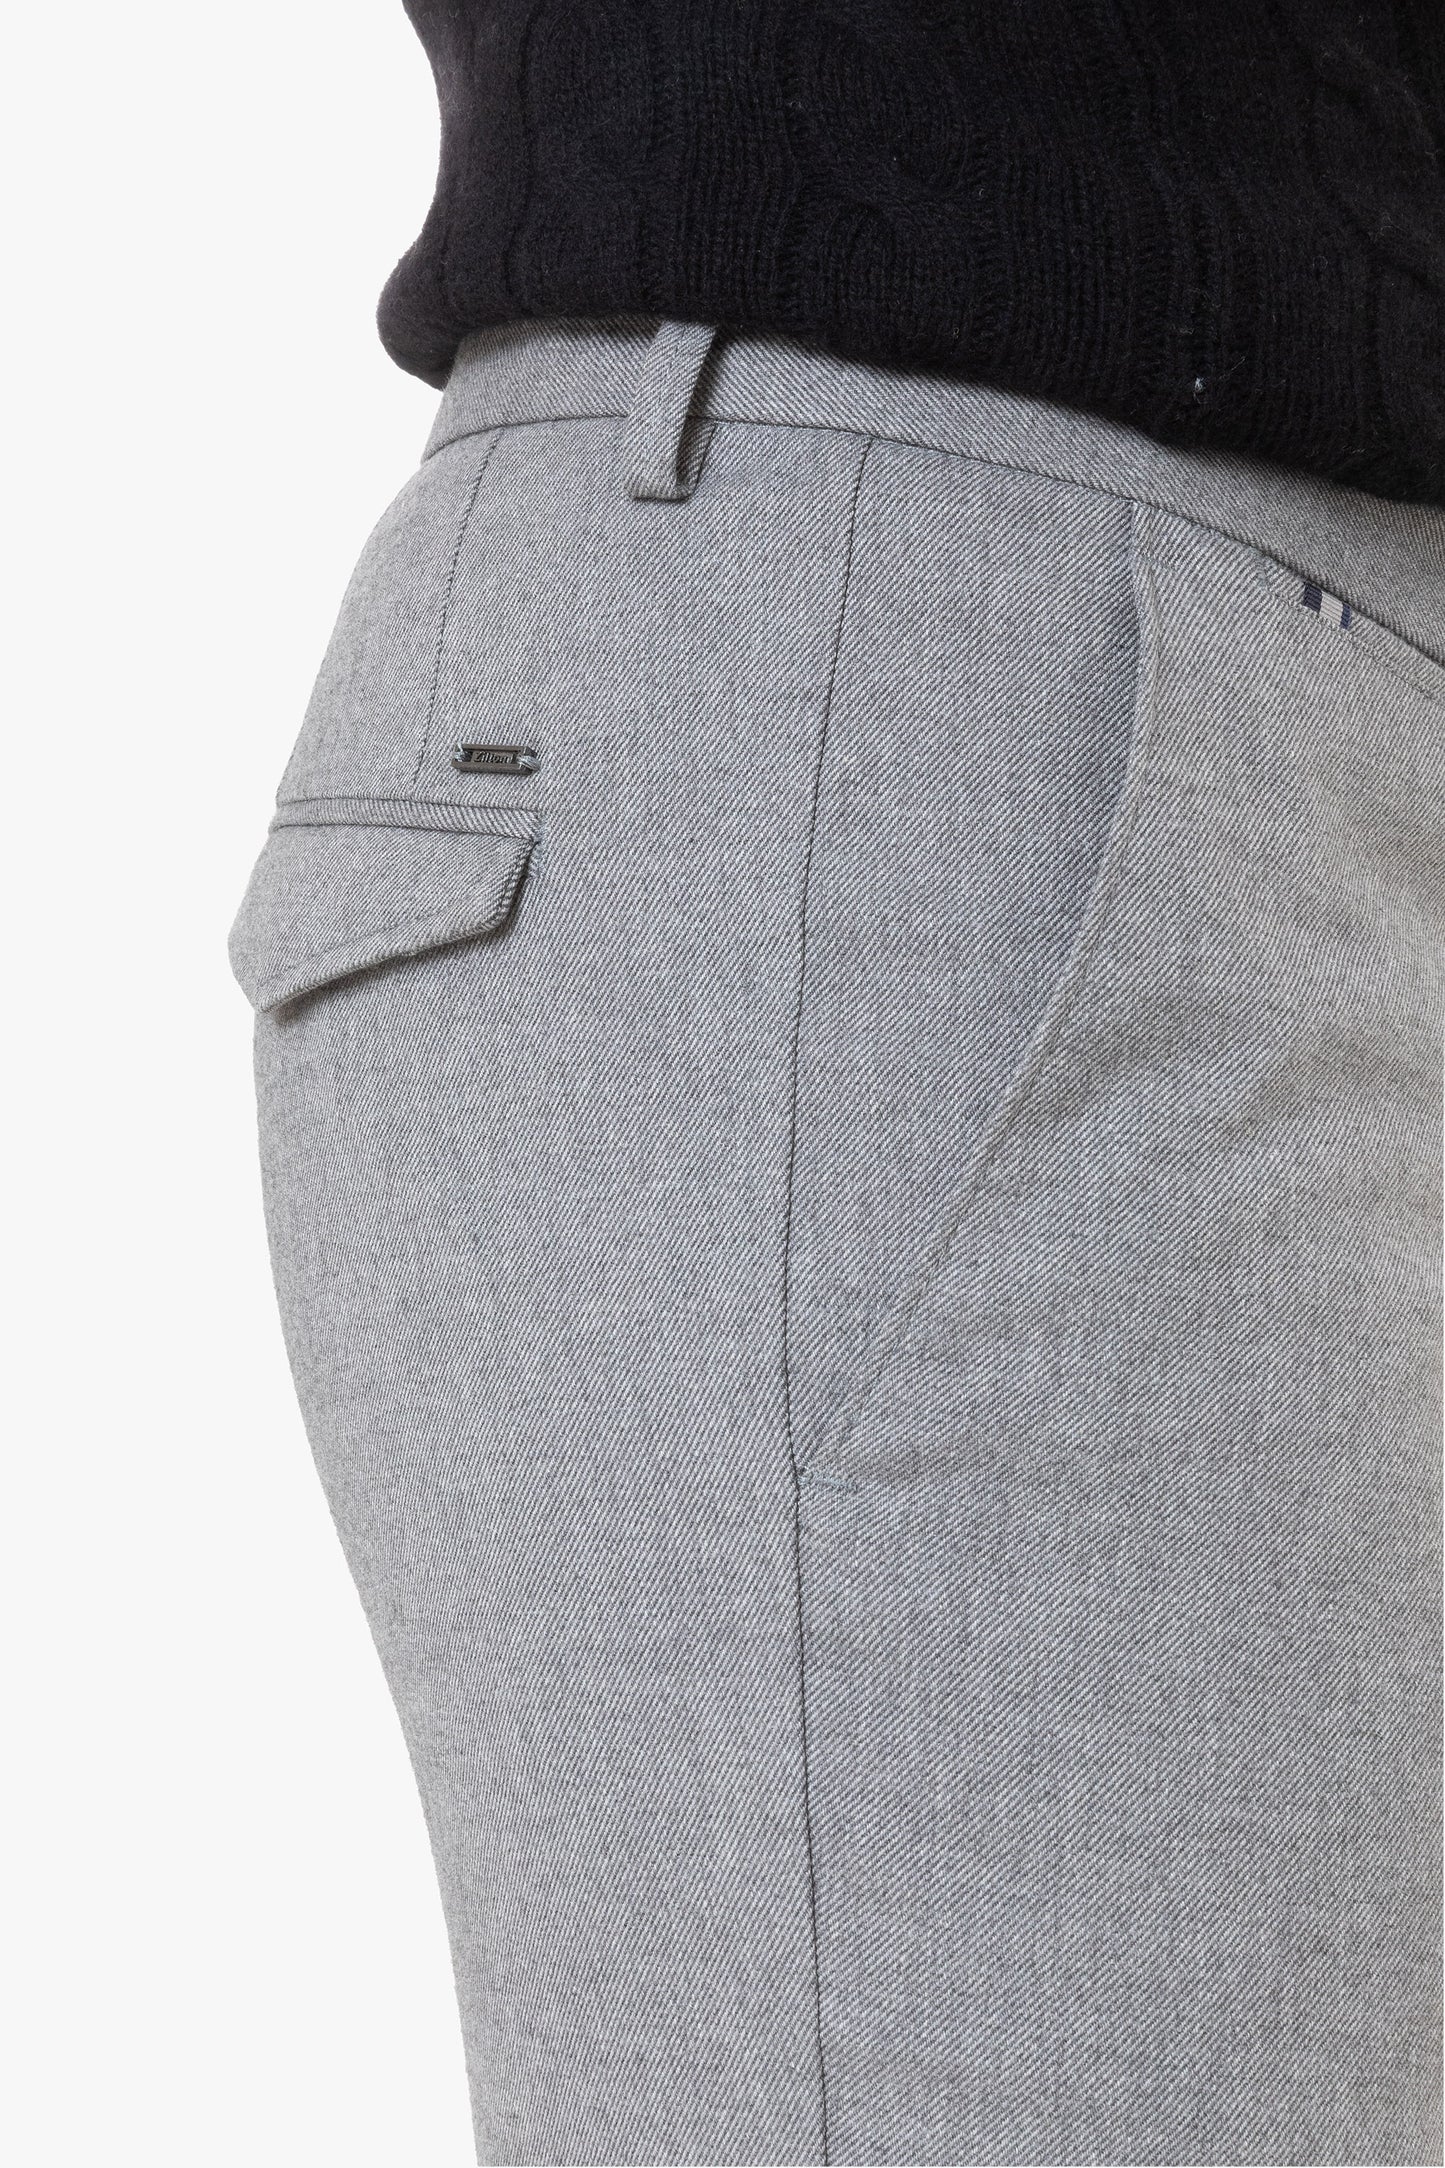 Grey slim fit trousers Zilton - Sidney-D 33/222